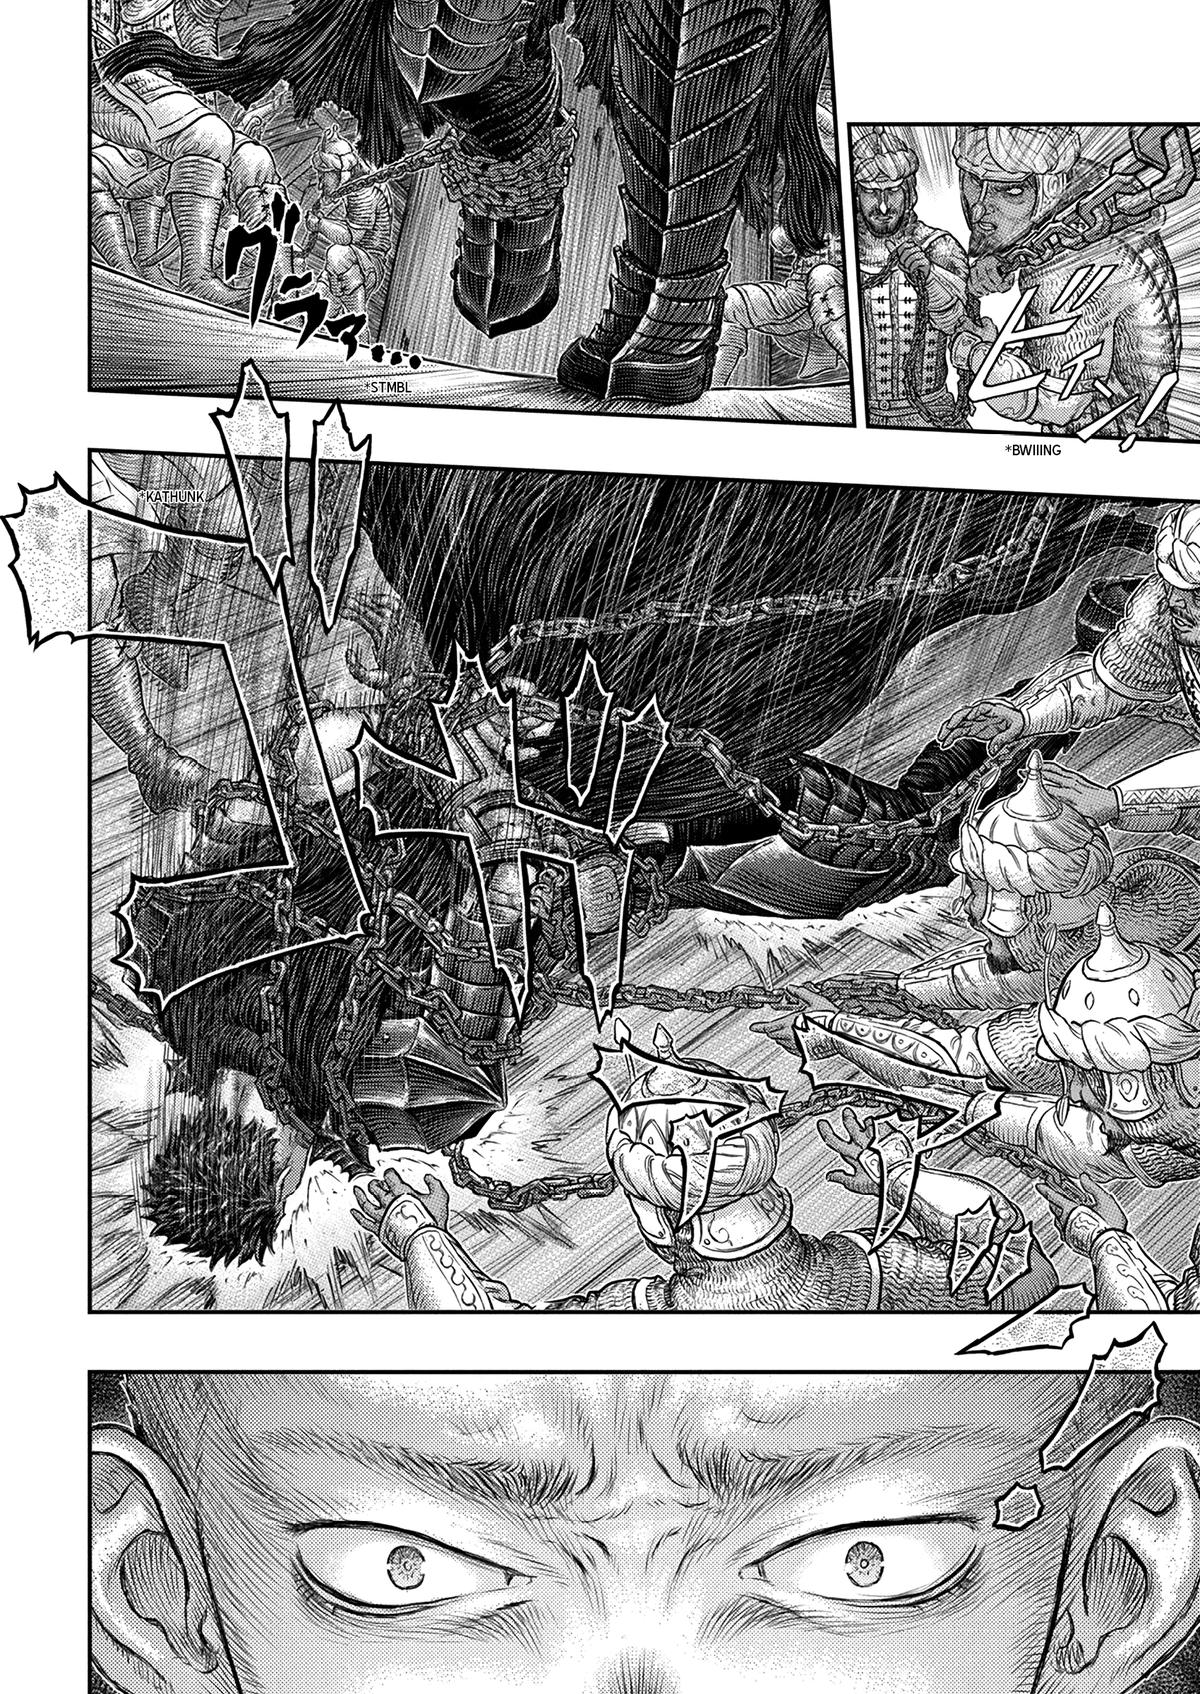 Berserk Manga Chapter 375 image 10